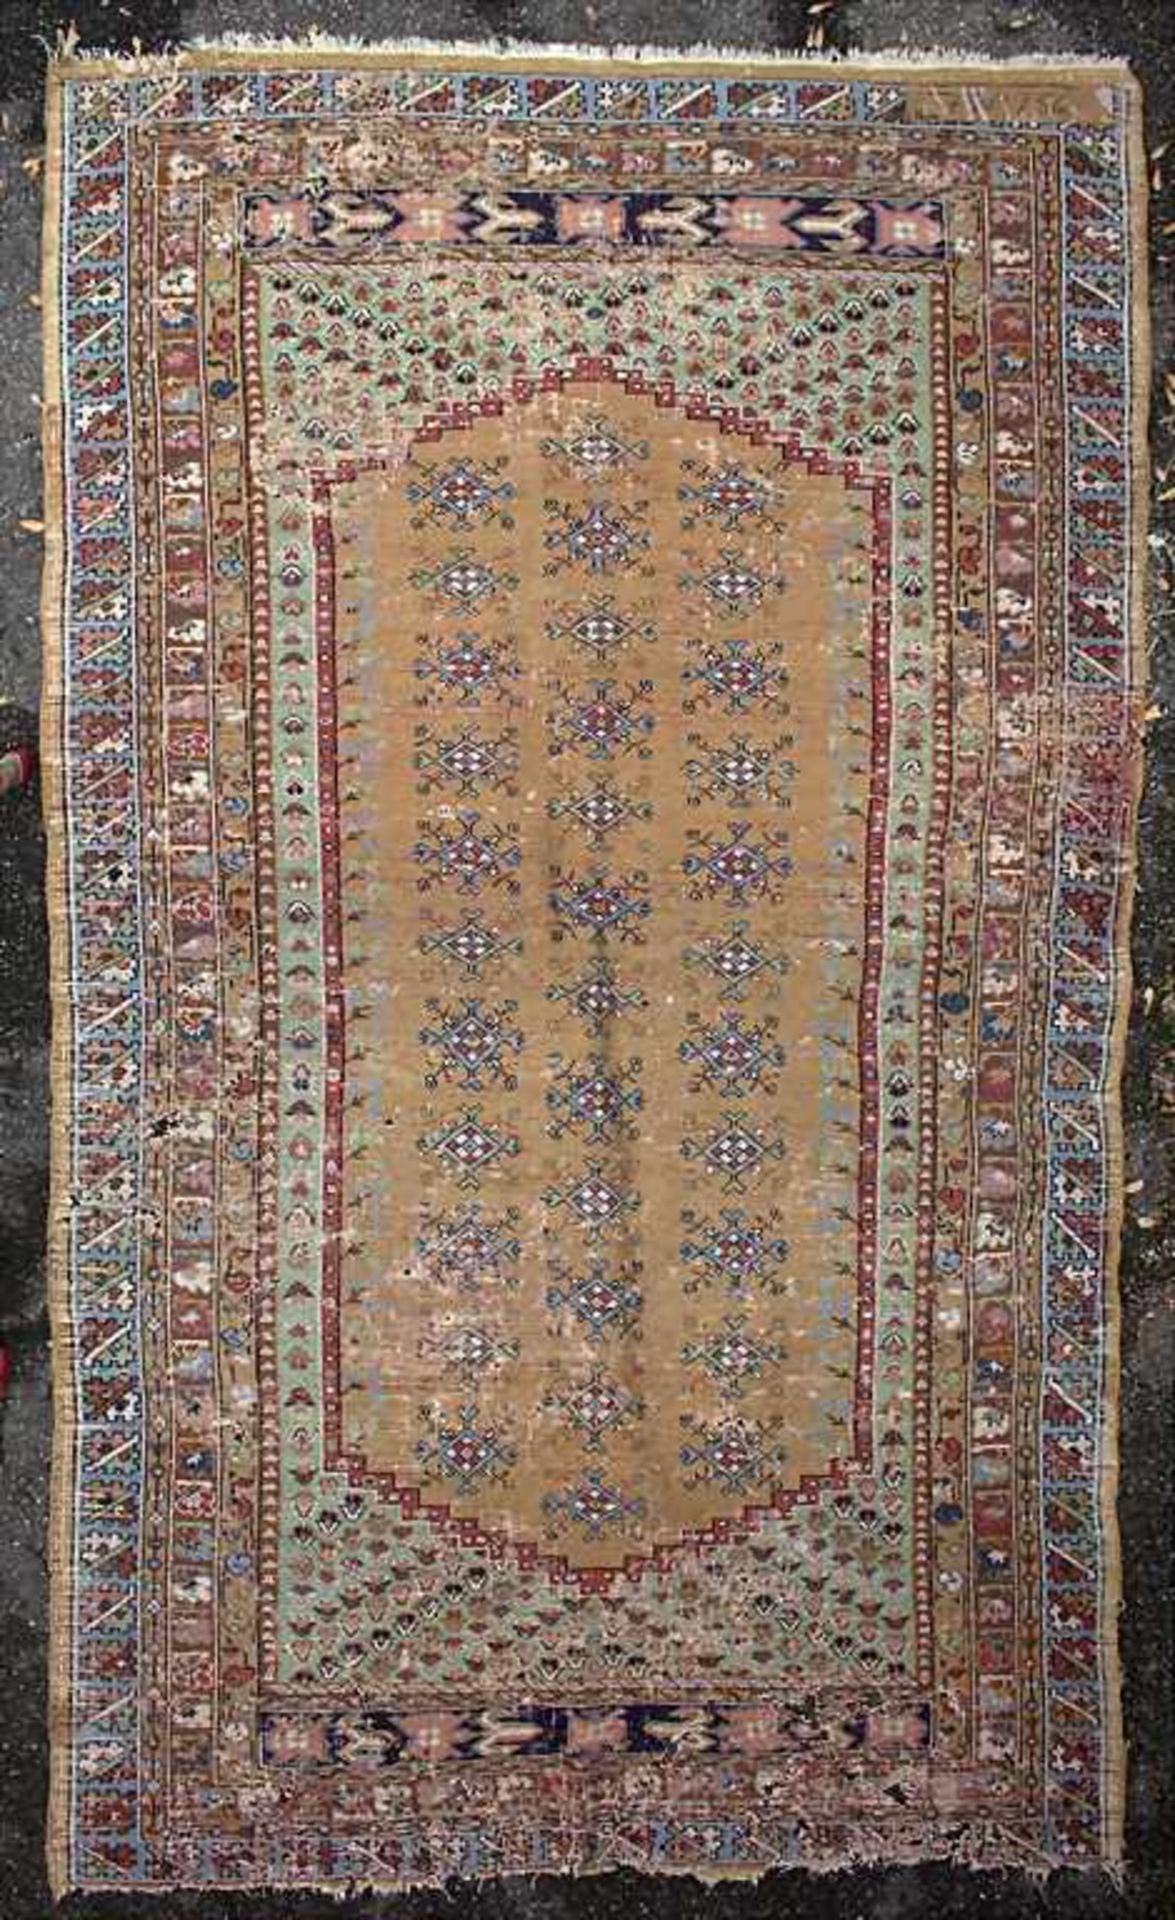 Orientteppich / An oriental carpetMaterial: Wolle auf Baumwolle, Maße: 242 x 140 cm, Zustand: - Bild 2 aus 3